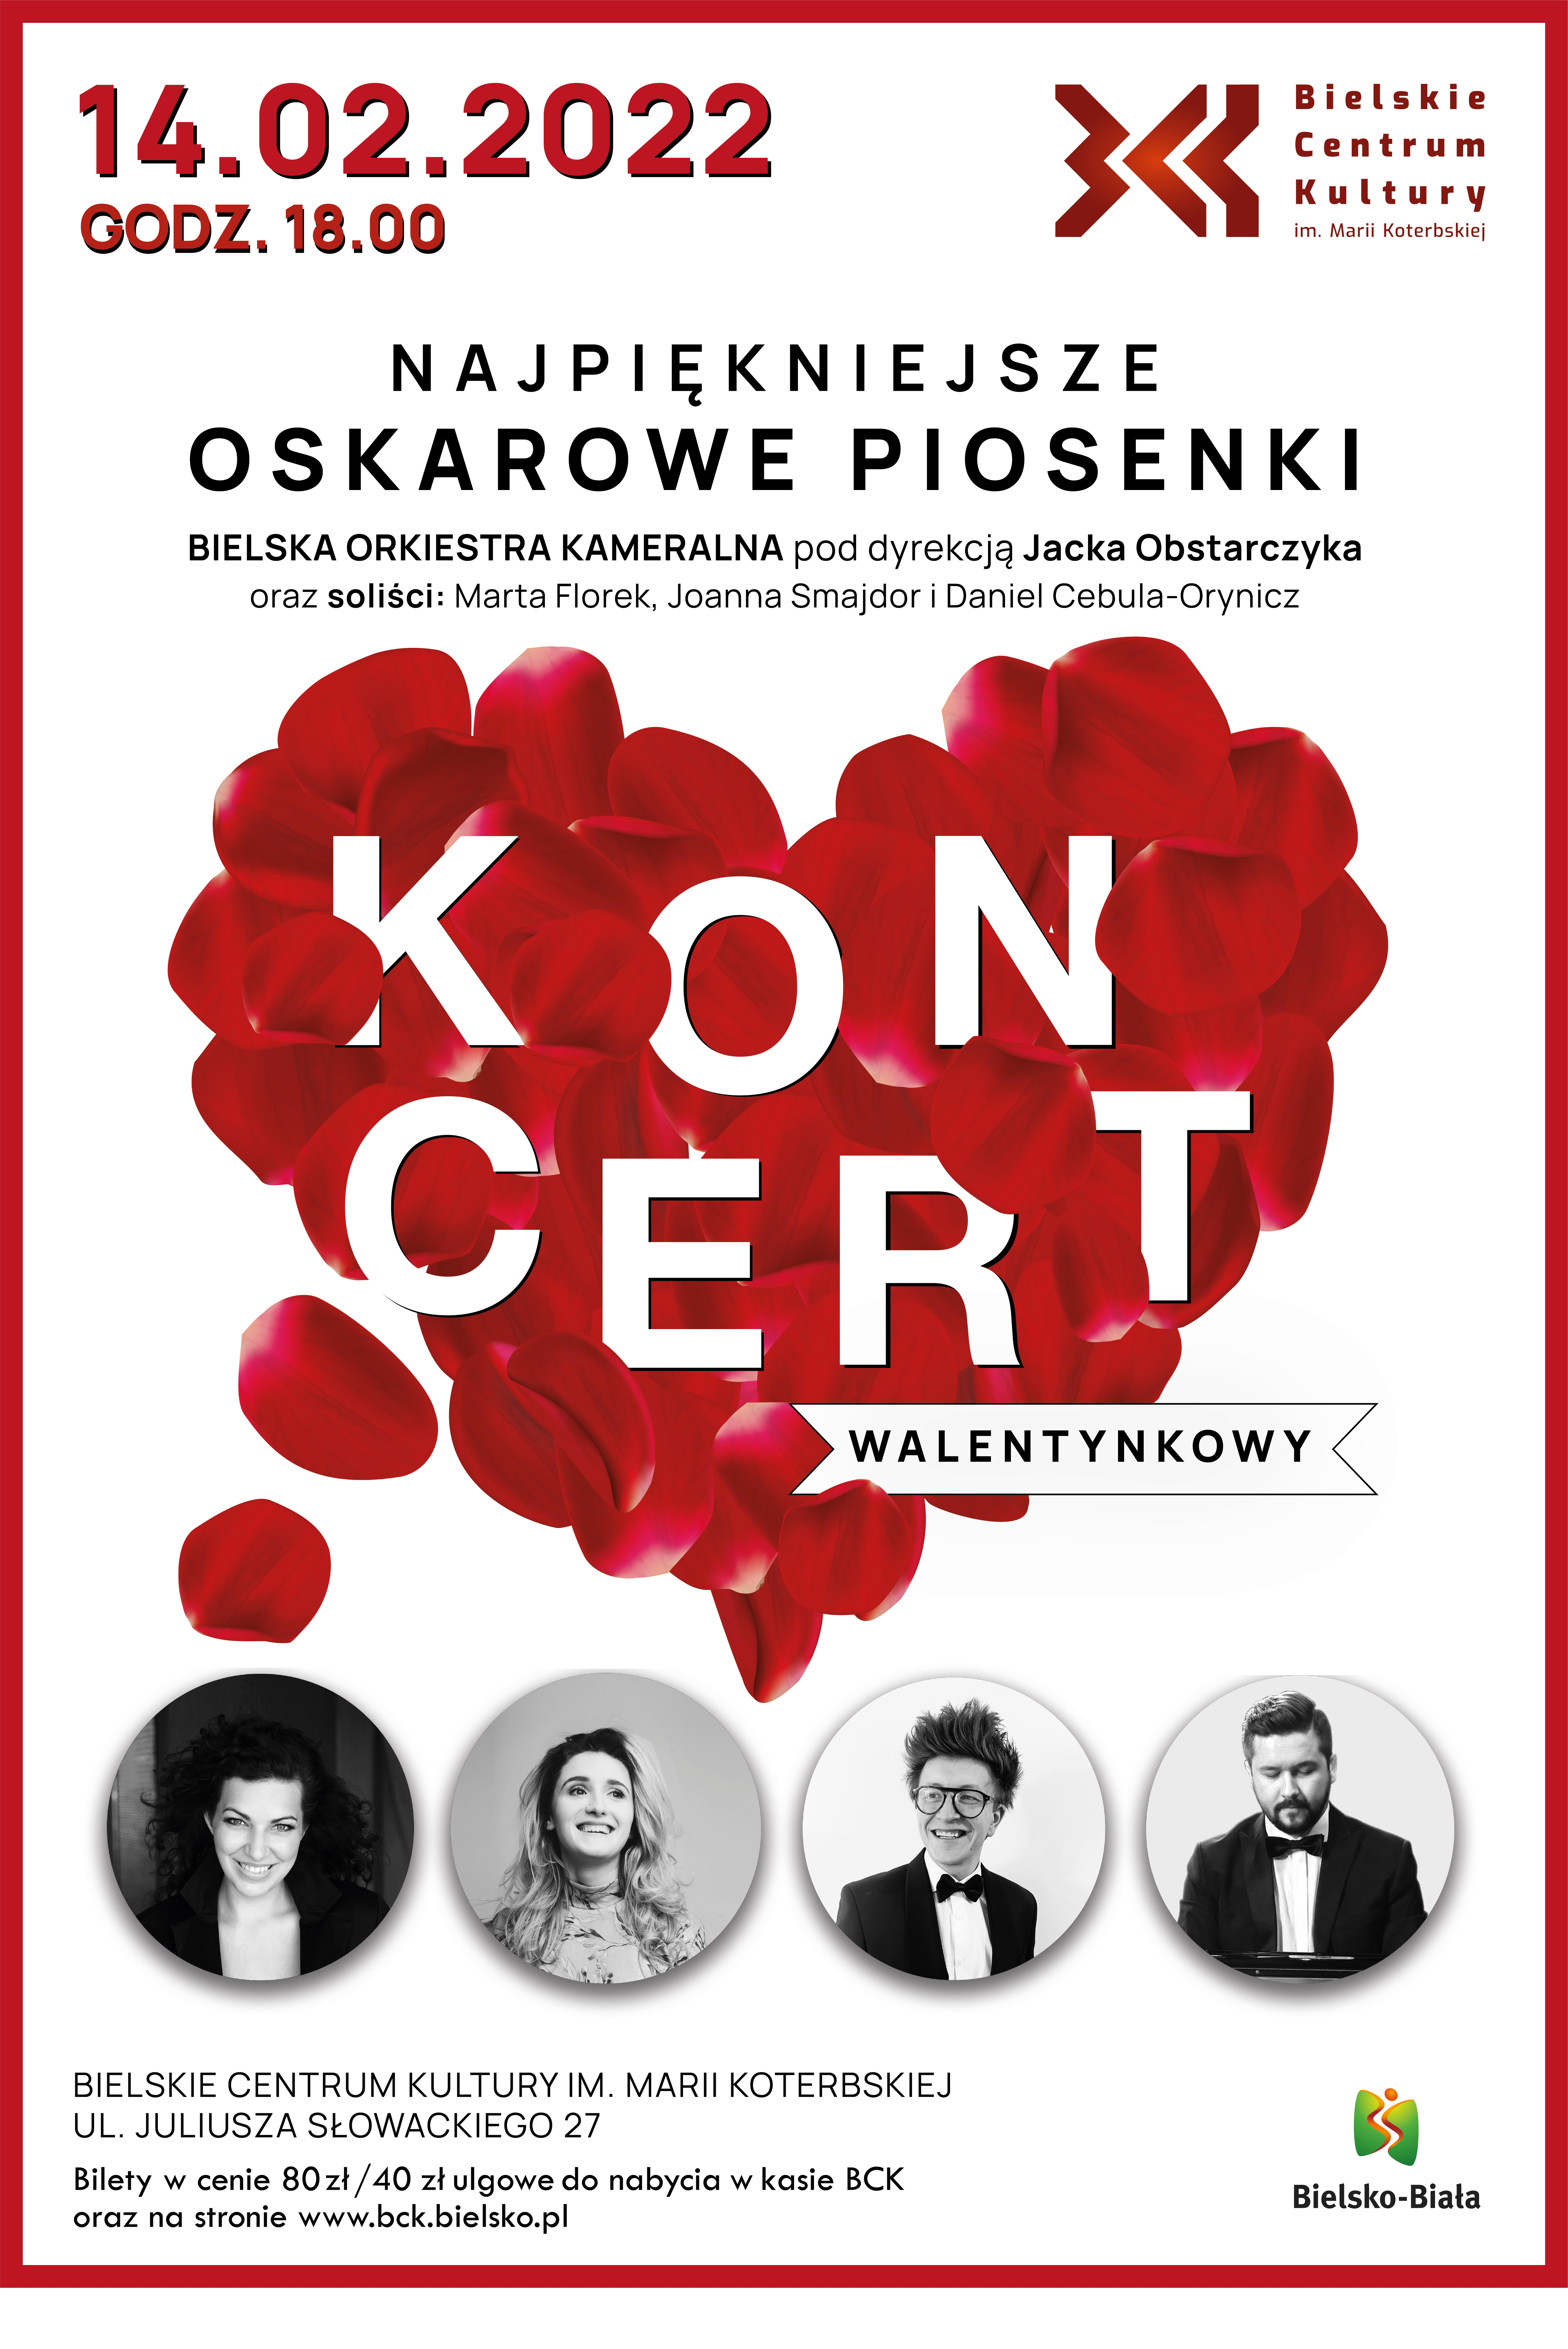  Koncert walentynkowy - odwołany
 Na zdjęciu plakat koncertu